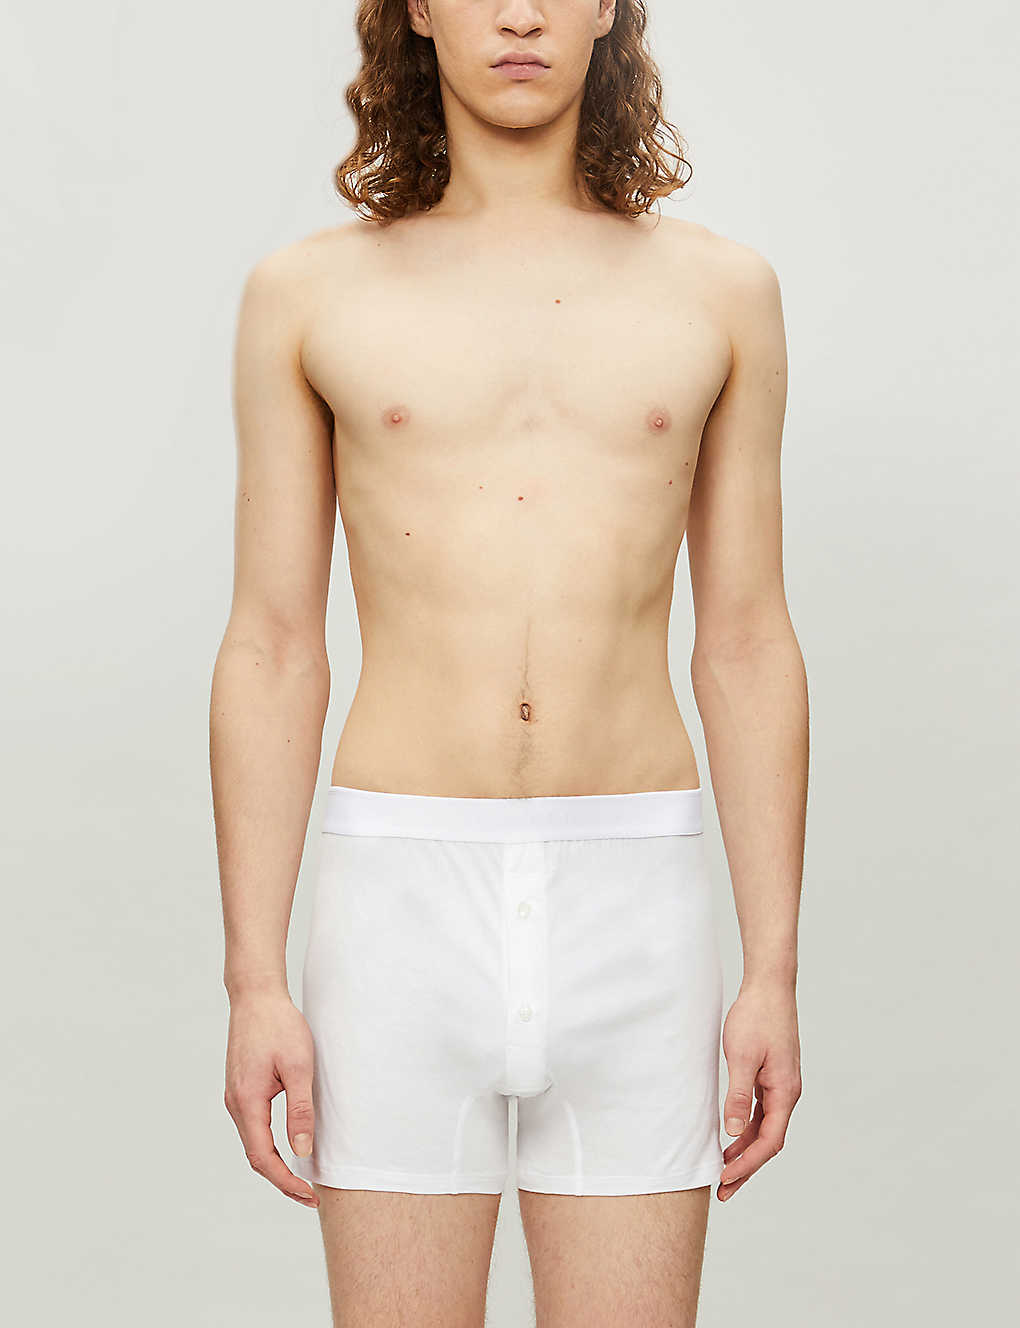 Shop Sunspel Men's White Superfine Two–button Boxer Shorts